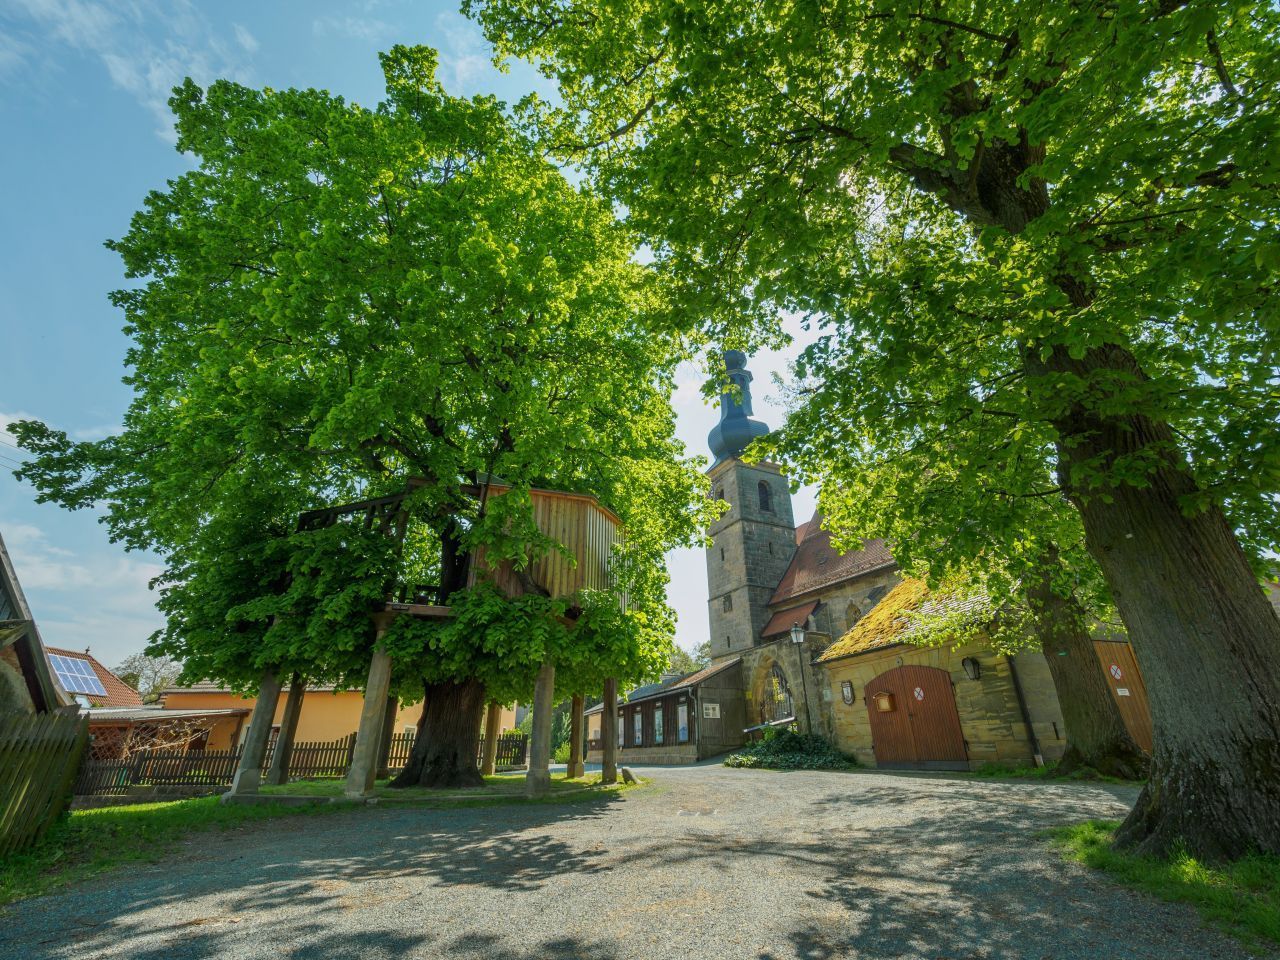 Seit Jahrhunderten gibt es die Tradition der Tanzlinden. Im oberfränkischen Limmersdorf steht ein rund 350 Jahre alter Baum im Dorfmittelpunkt. Zur Kirchweih zimmert man auf das Gerüst um die Linde einen Tanzboden - und ab geht die Party auf dem Baum.